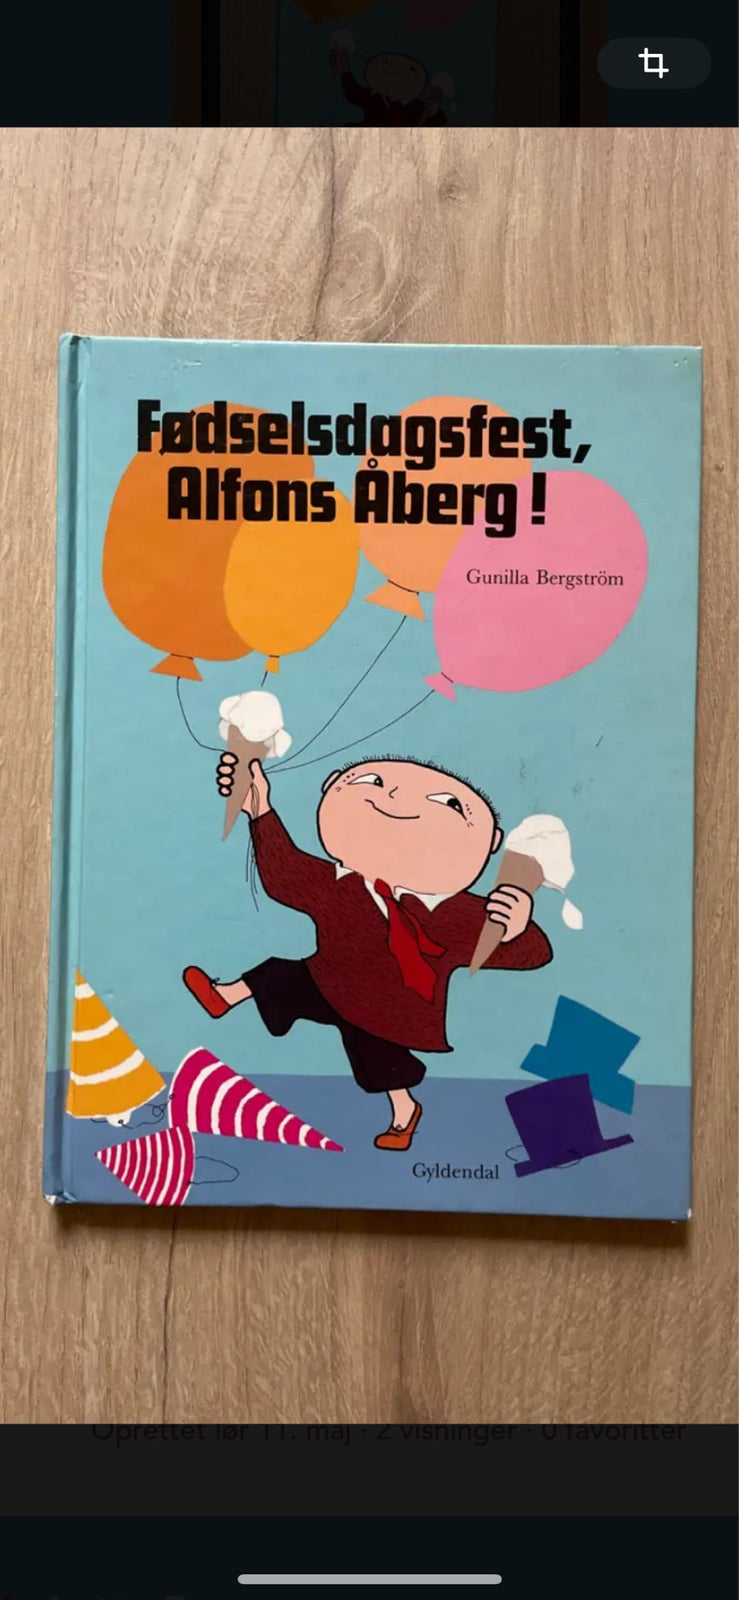 Fødselsdagsfest, Alfons Åberg, Gunilla Bergström